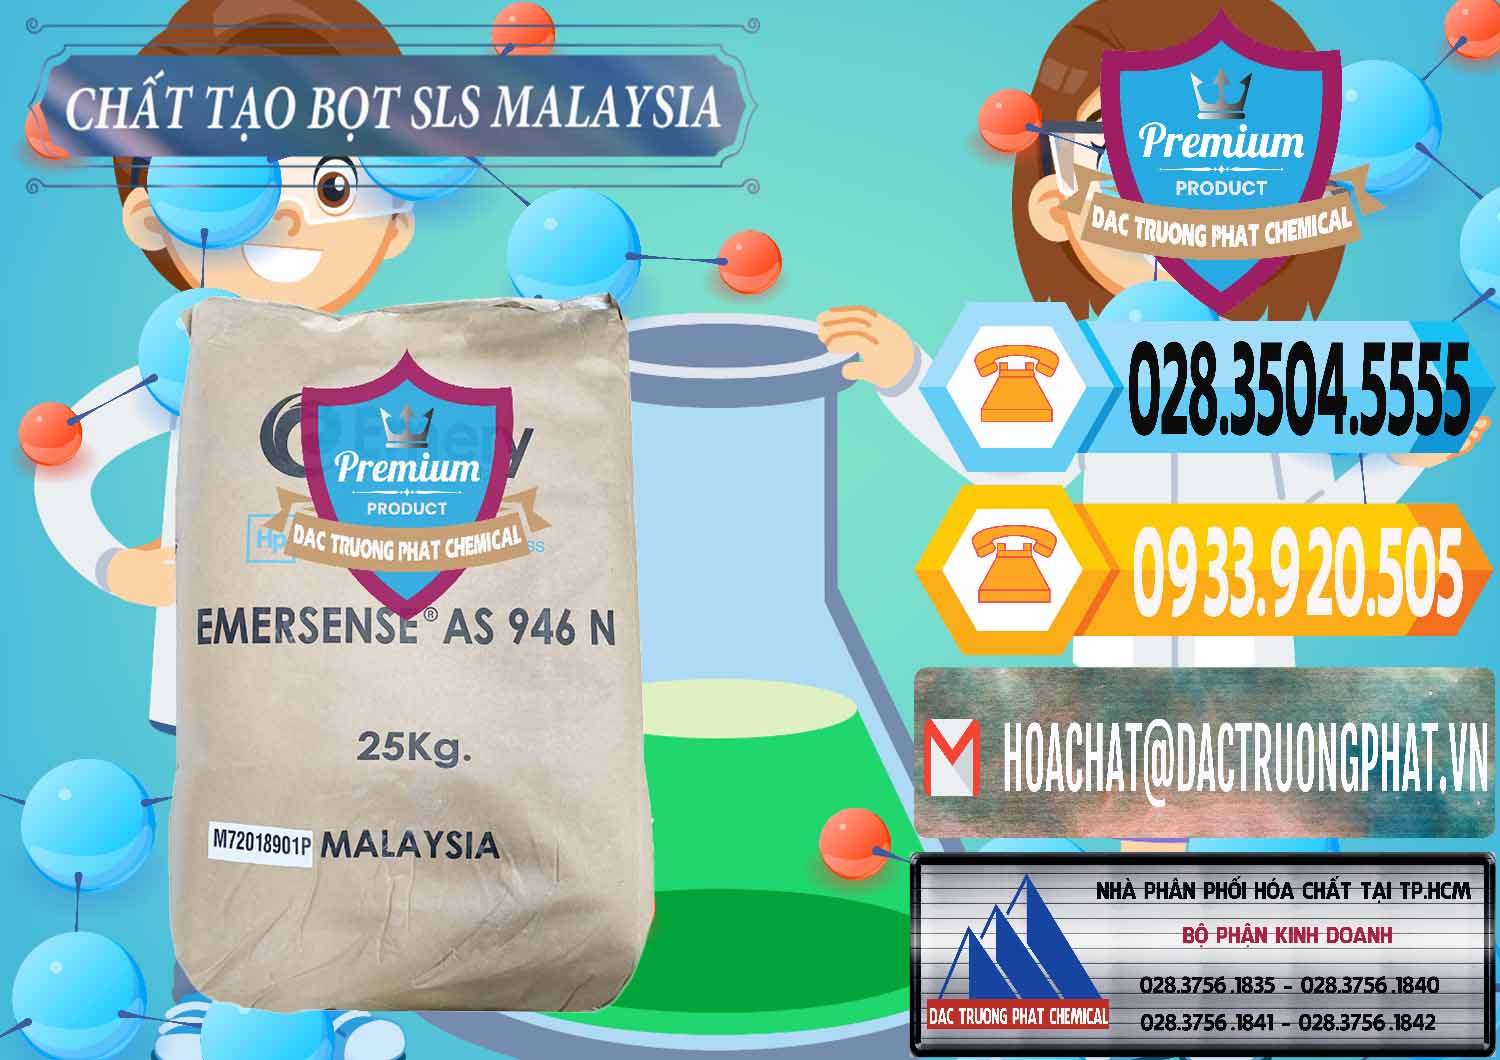 Đơn vị chuyên phân phối _ bán Chất Tạo Bọt SLS Emery - Emersense AS 946N Mã Lai Malaysia - 0423 - Công ty cung cấp - phân phối hóa chất tại TP.HCM - hoachattayrua.net